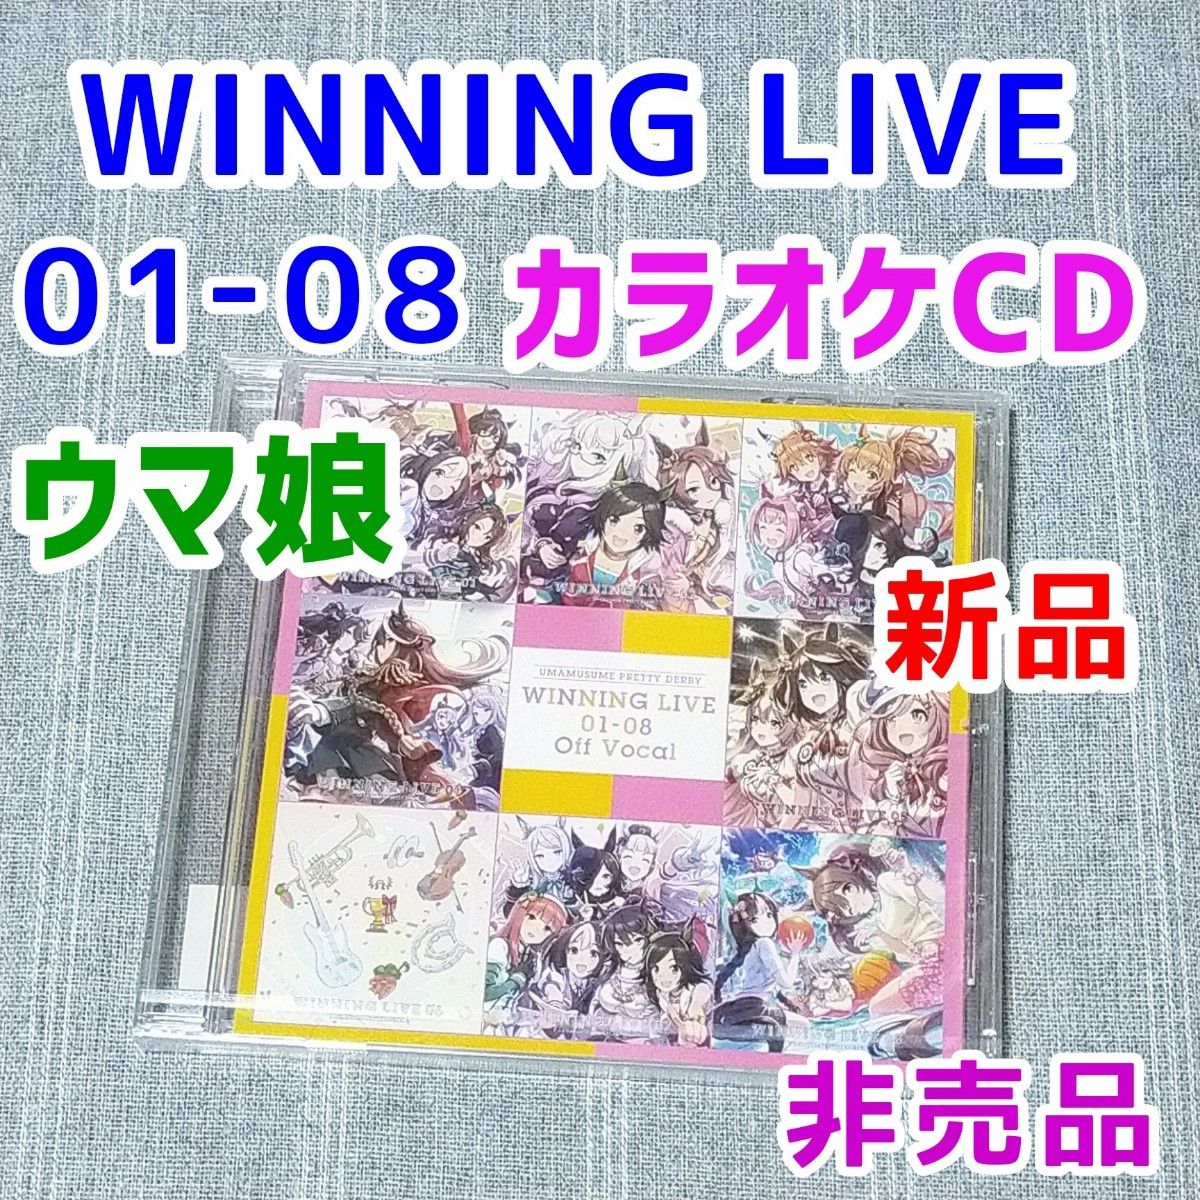 ウマ娘 WINNING LIVE 01-08 Off Vocal★CD OffVocal 02 03 04 05 06 07